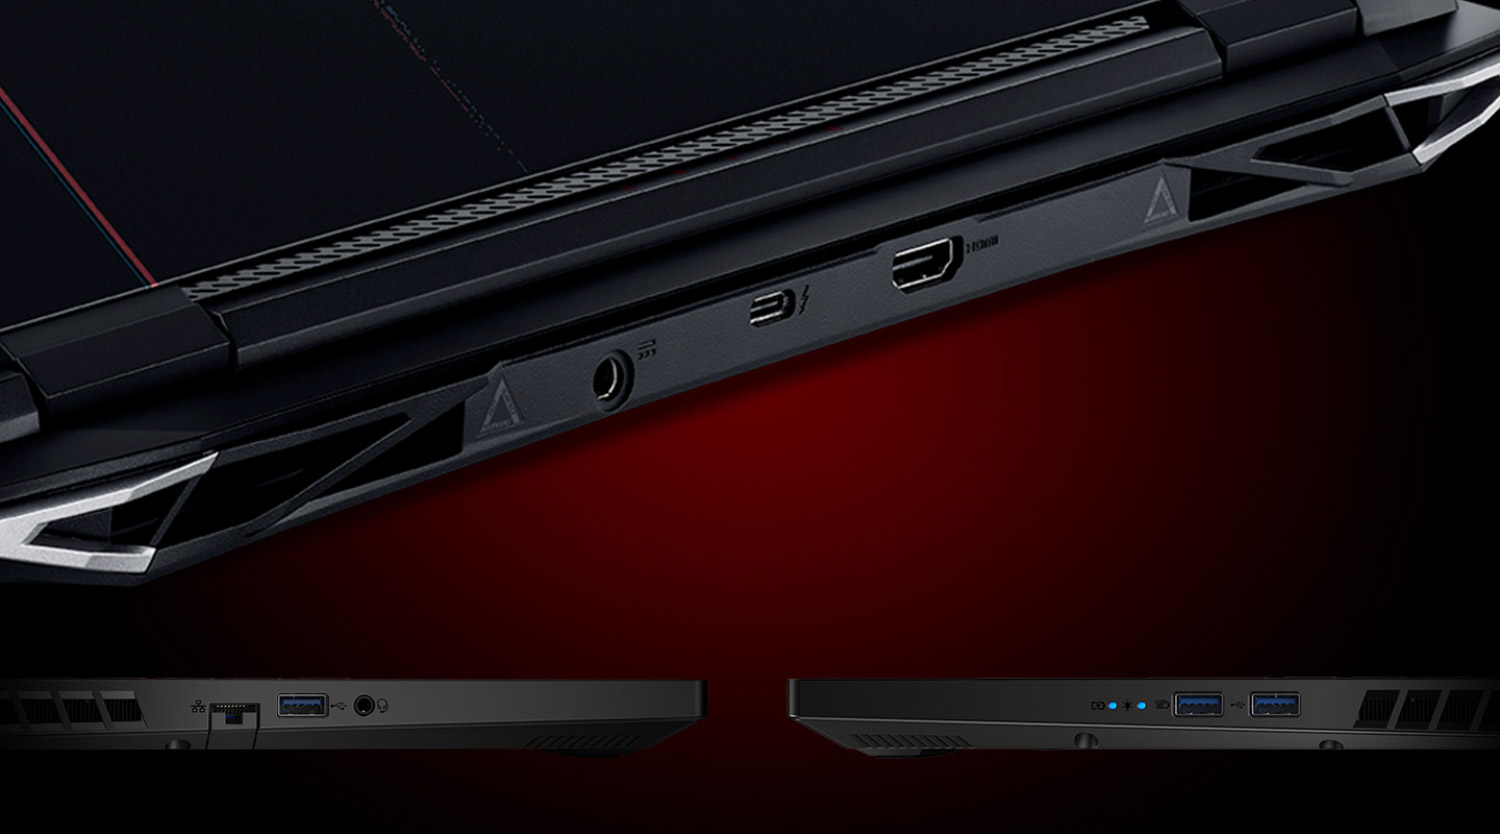 Detalhes das laterais do notebook Acer nitro 5, mostrando as entradas de conexão.